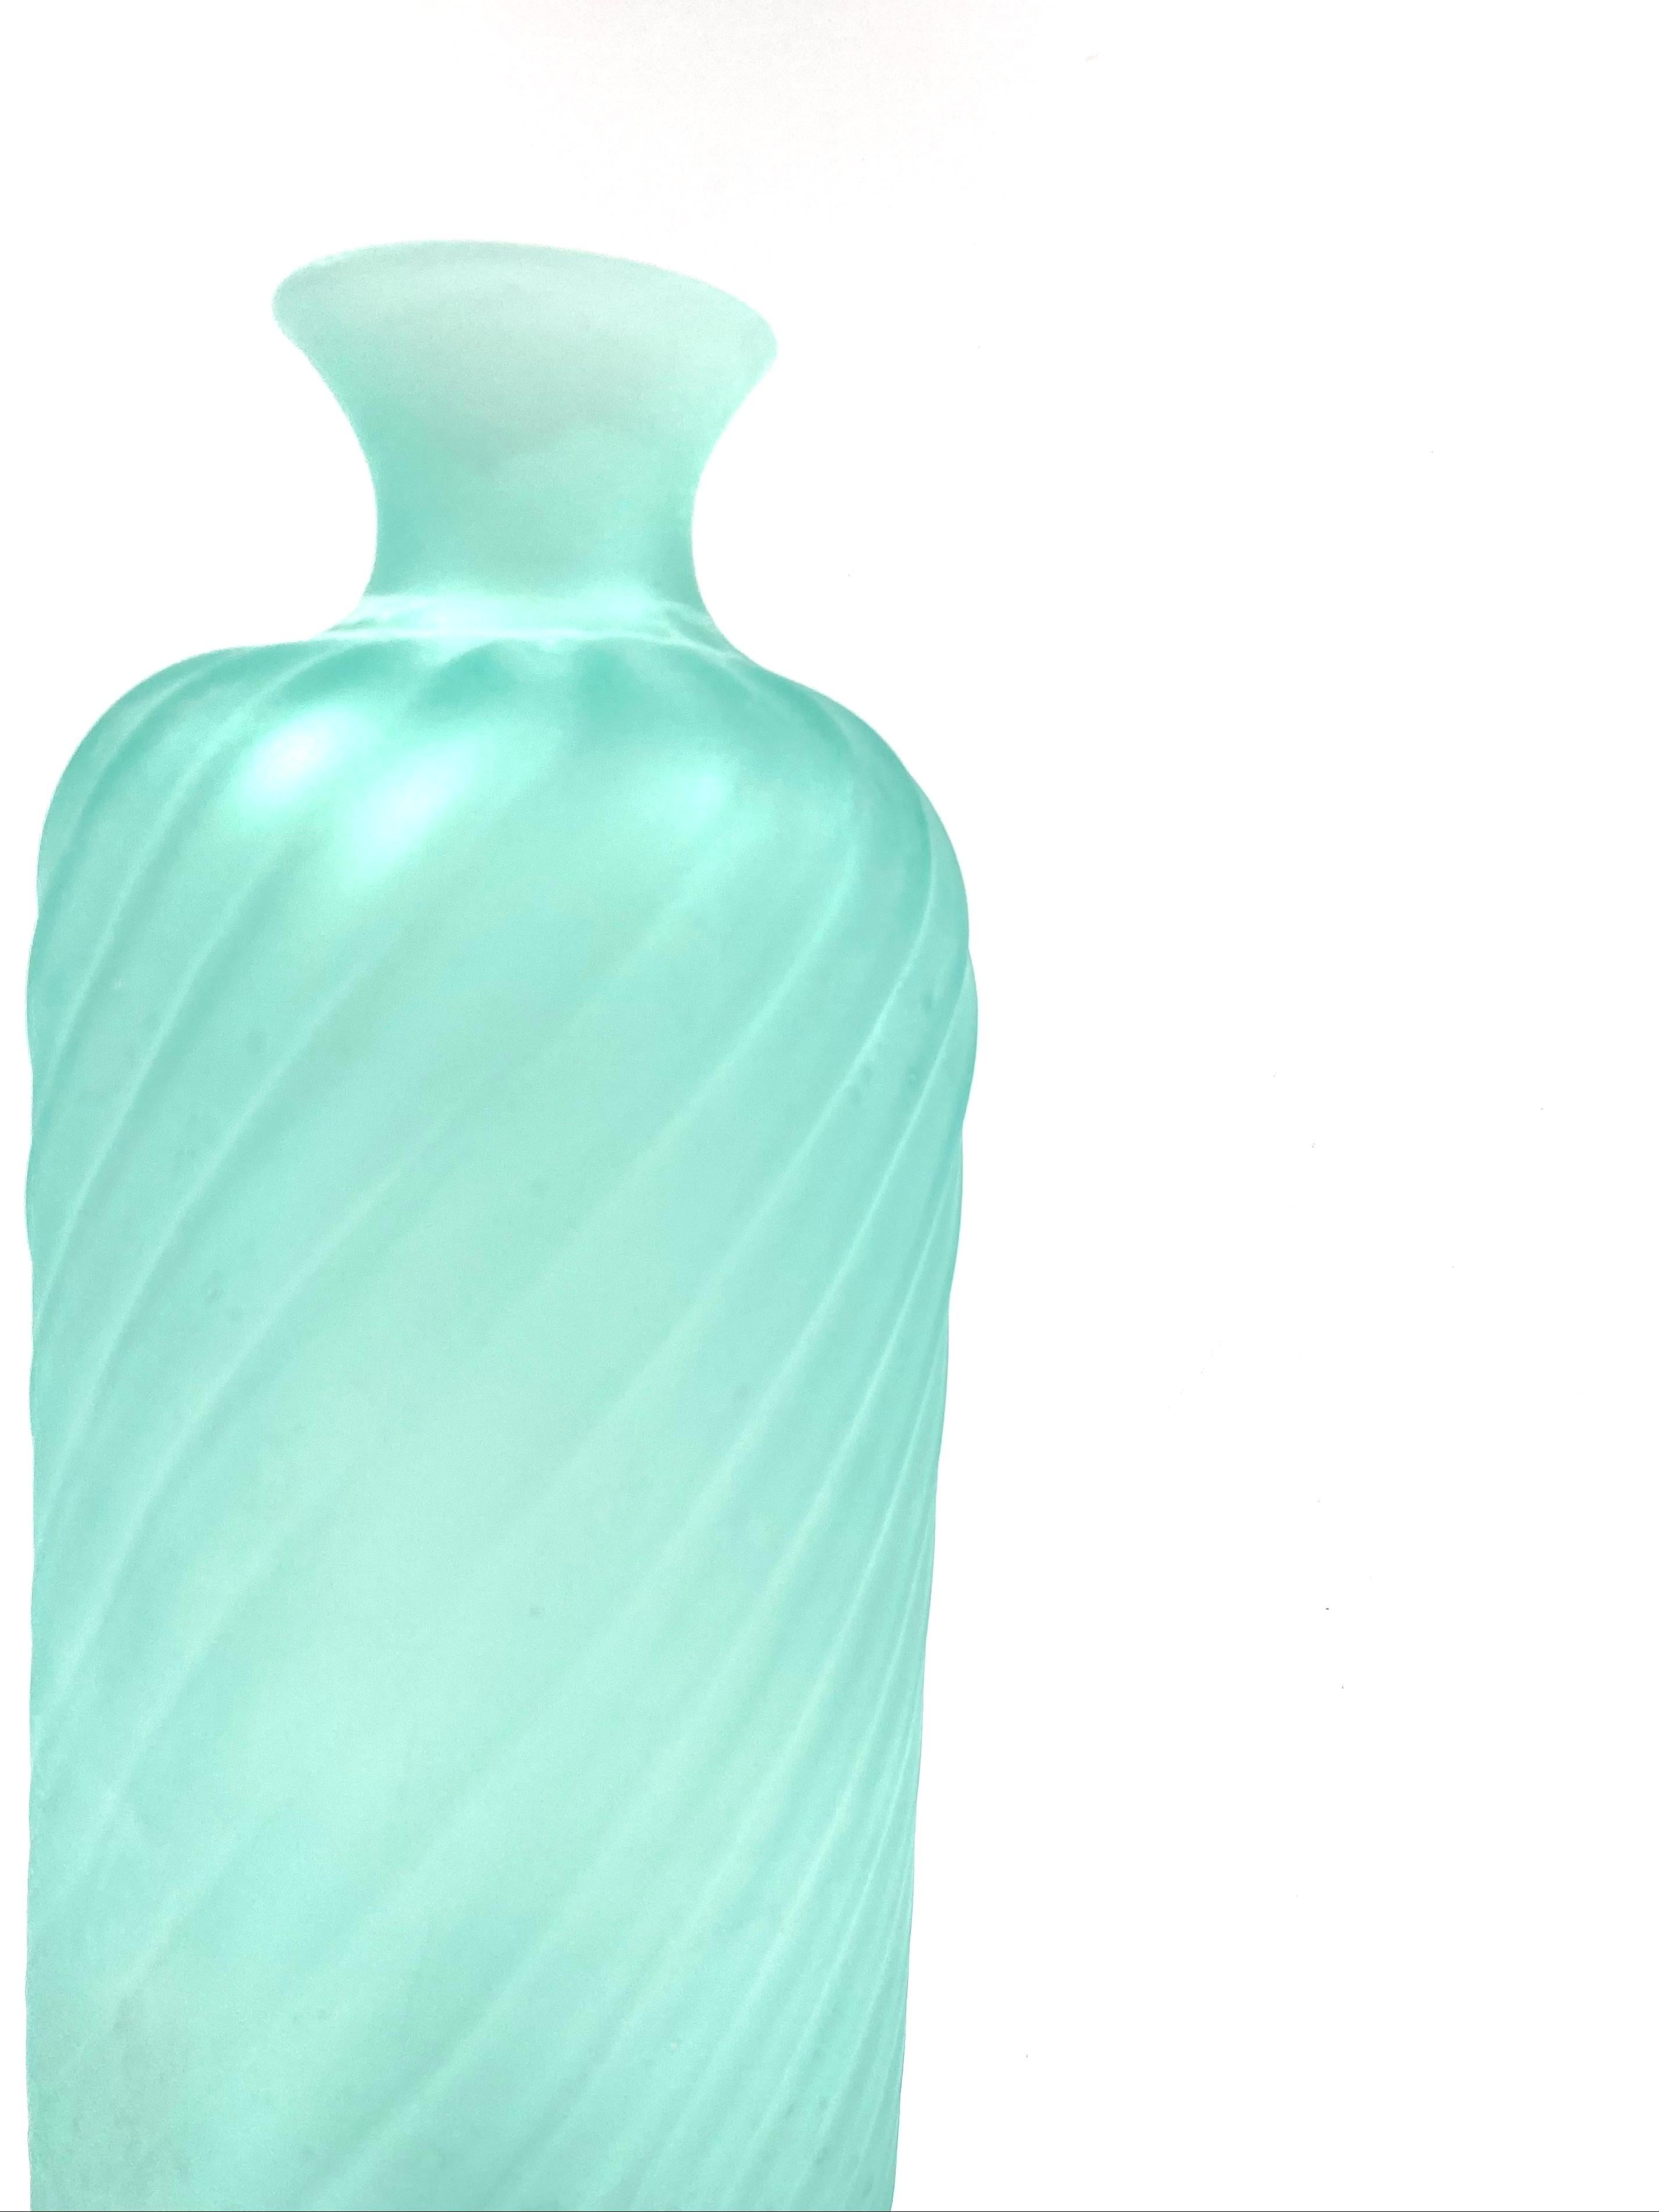 Fin du 20e siècle Gino Cenedese, vase en verre dépoli de Murano vert aqua, Cenedese, Murano, Italie 1970 en vente